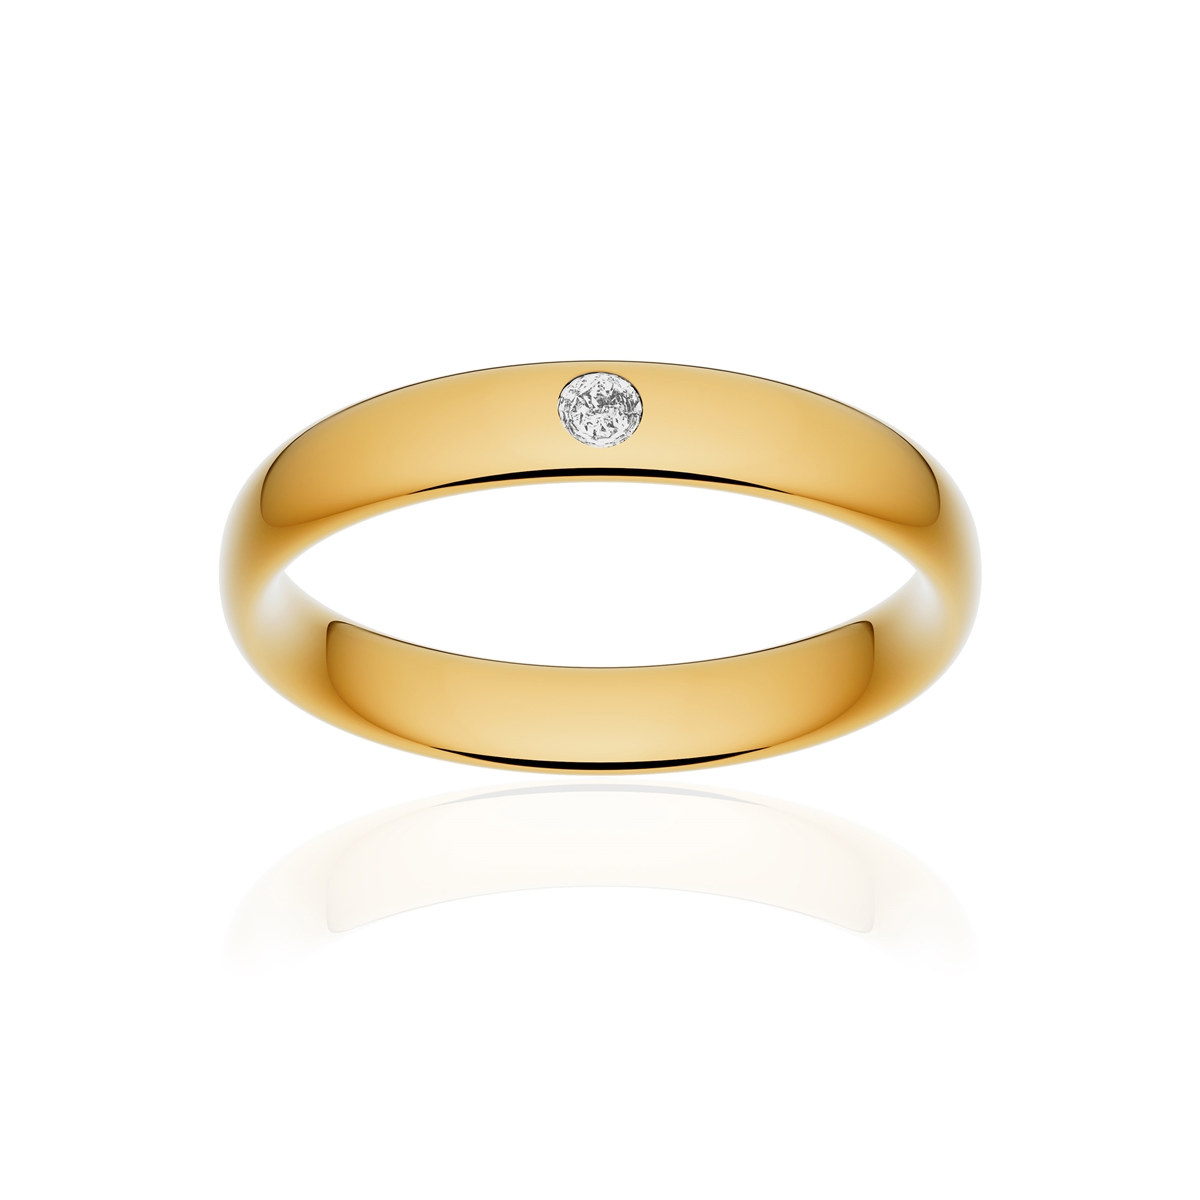 Alliance or 750 jaune poli ruban confort 4mm diamant brillant